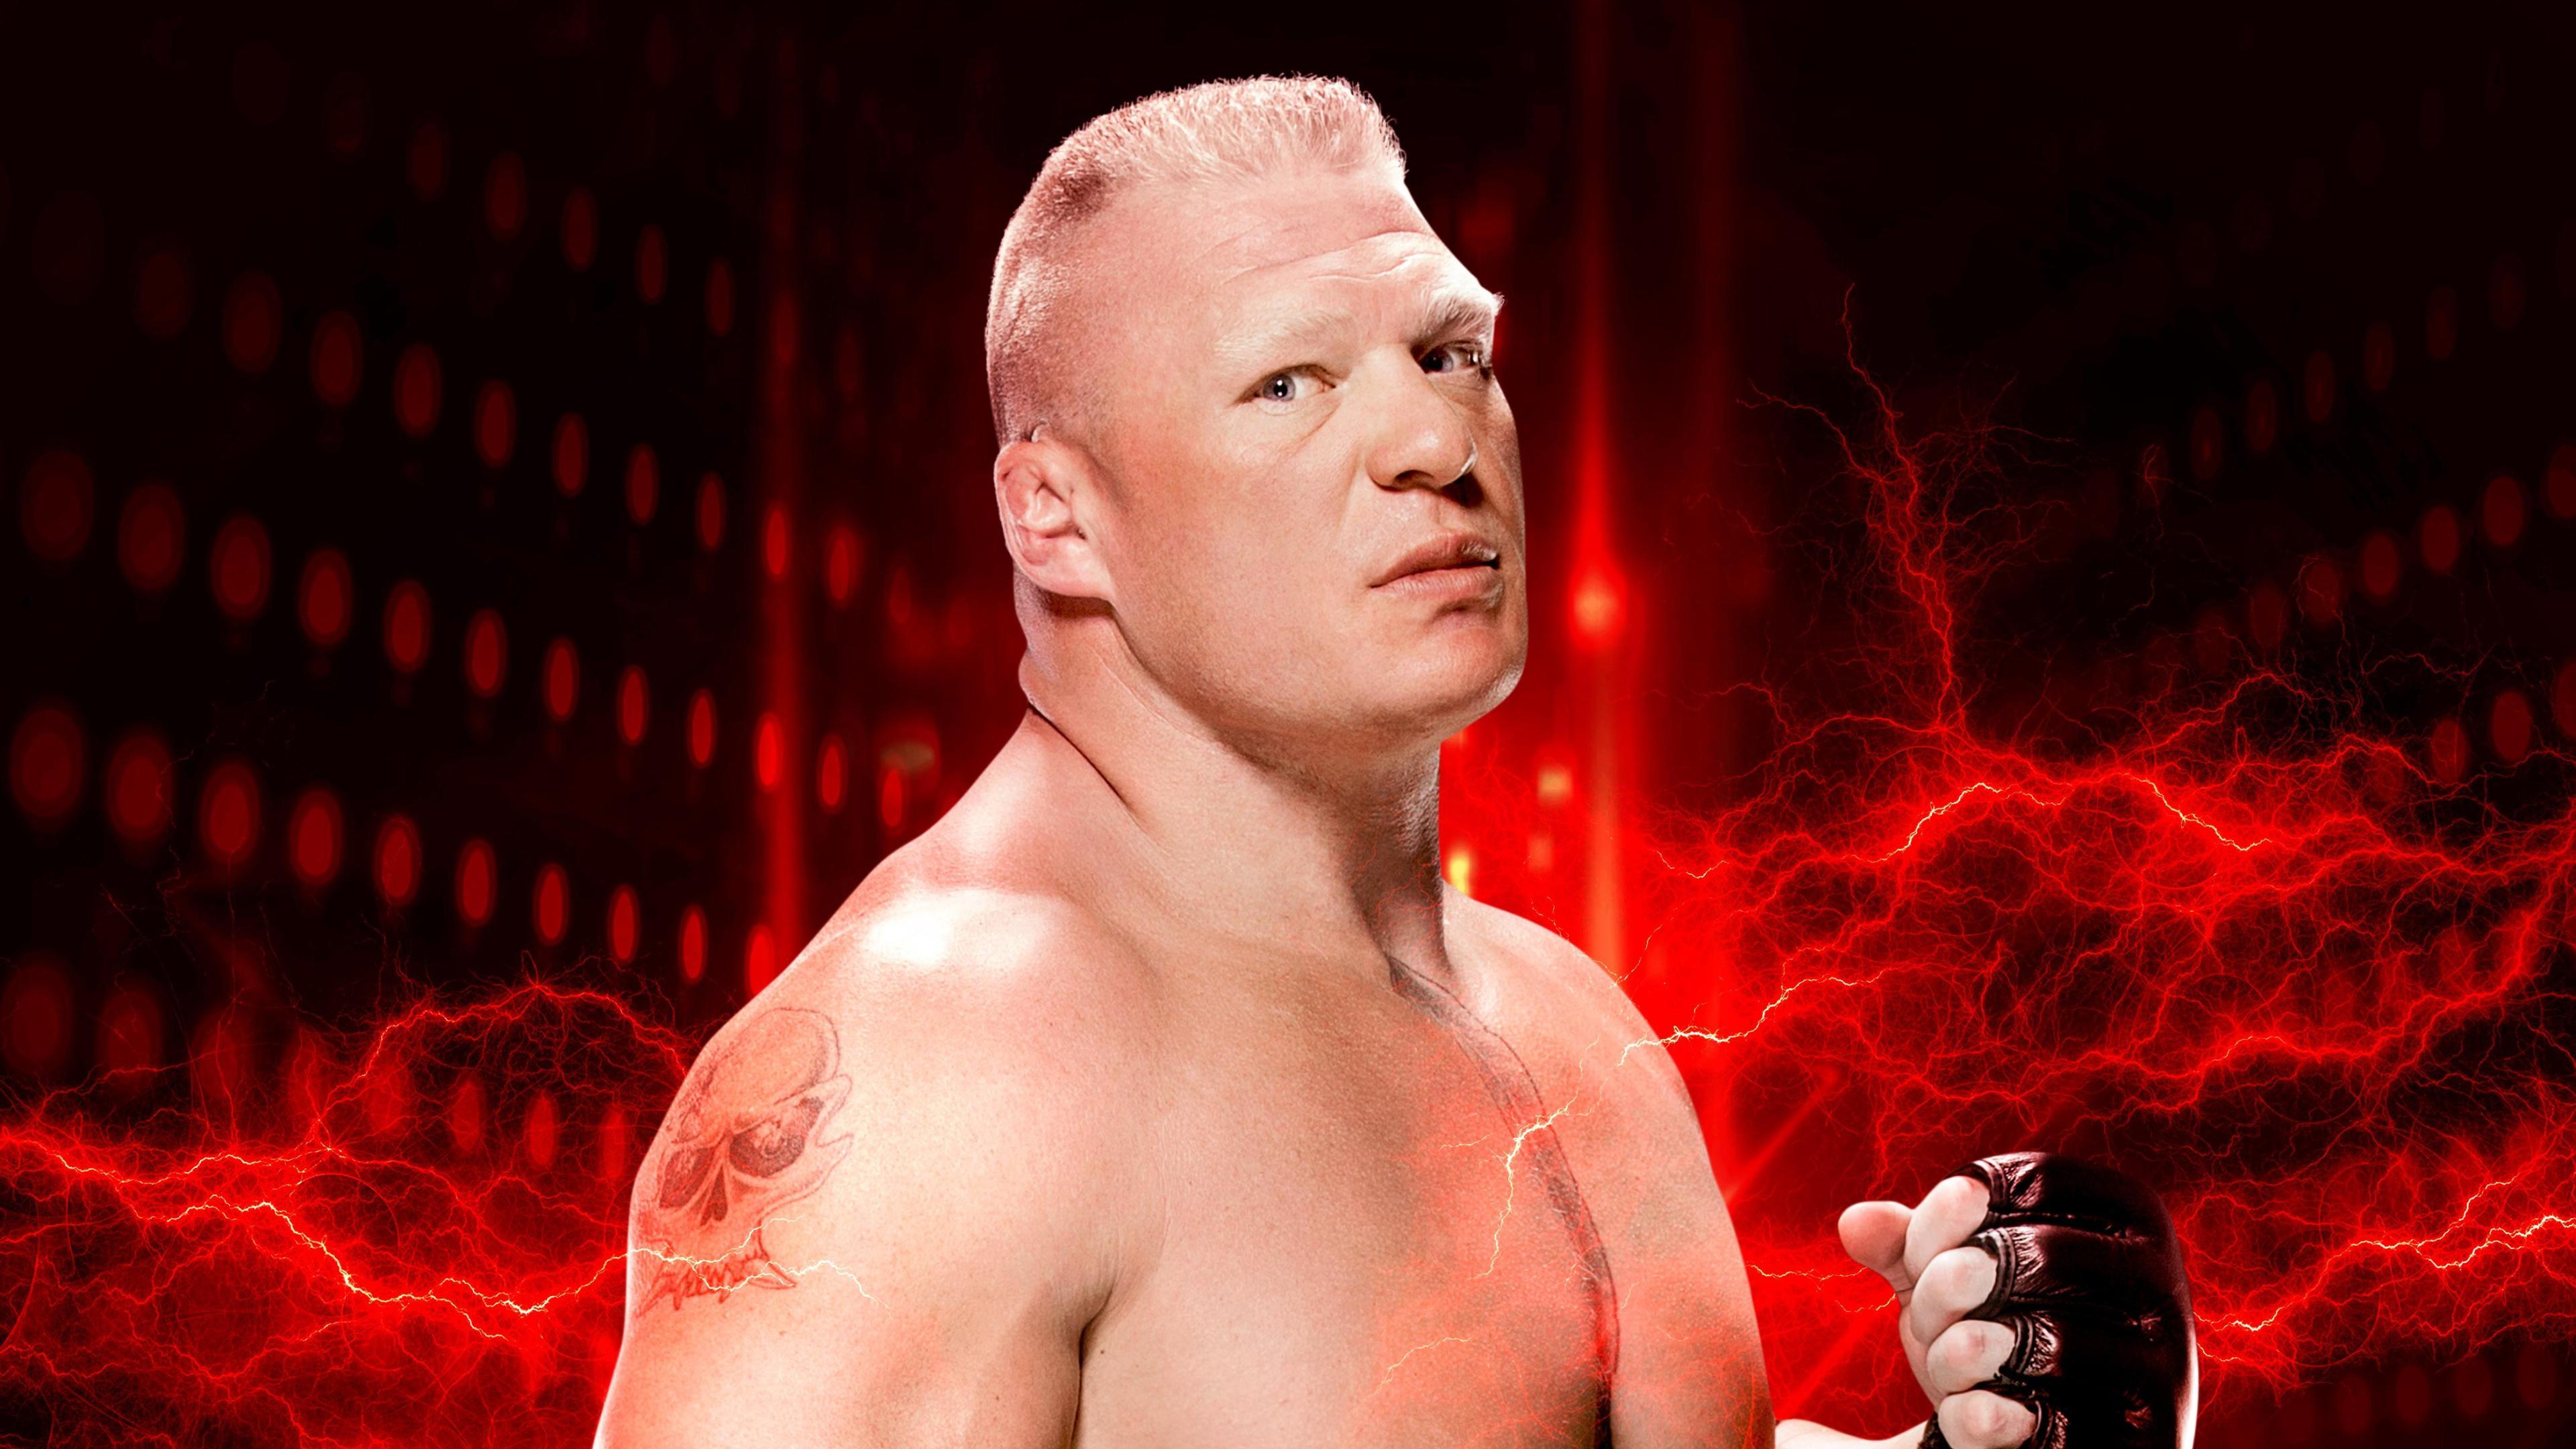 Brock Lesnar WWE 2K HD Games, 4k Wallpaper, Image, Background